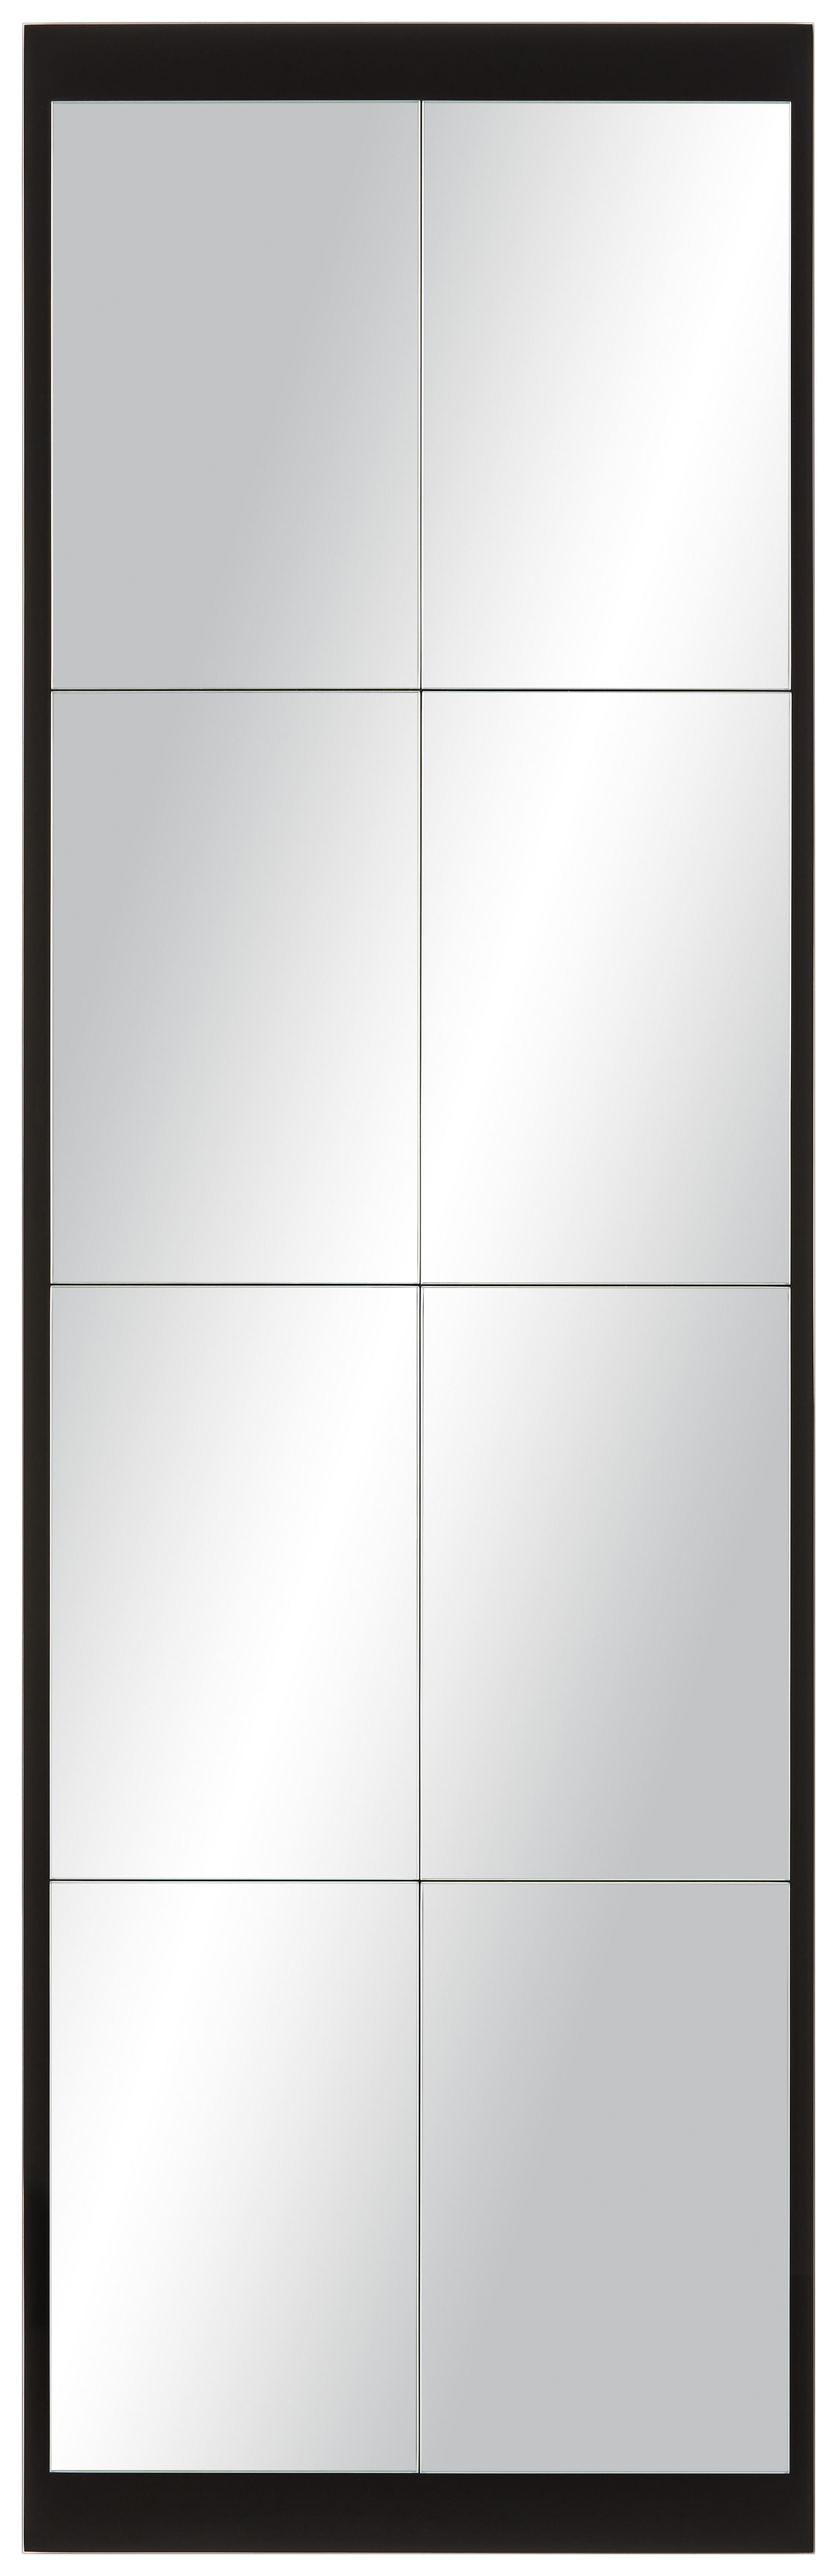 Wandspiegel in Schwarz - Schwarz, MODERN, Glas (43/137cm) - Modern Living